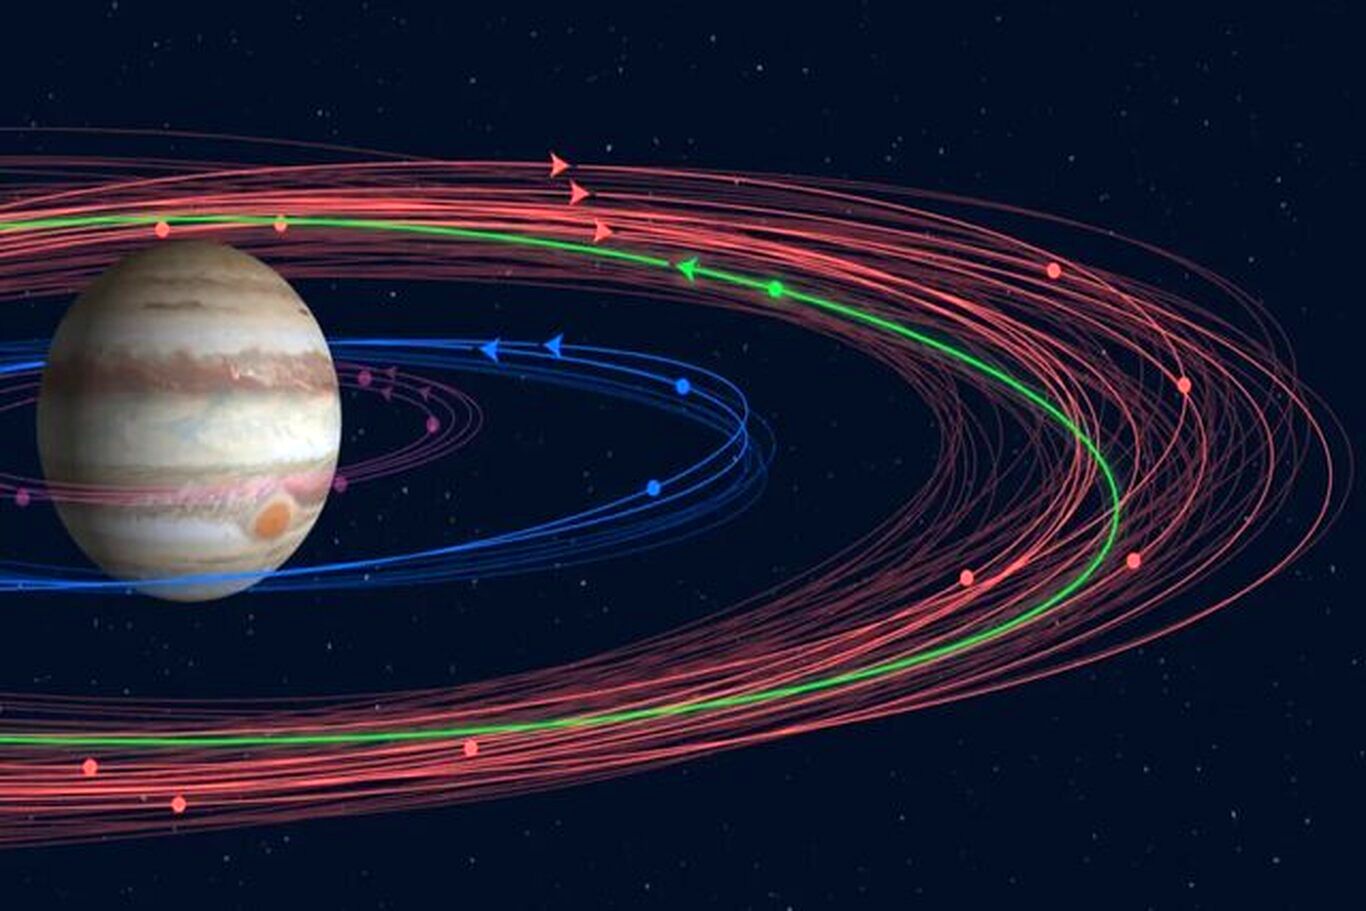 ۱۲ قمر جدید برای سیاره مشتری کشف شد